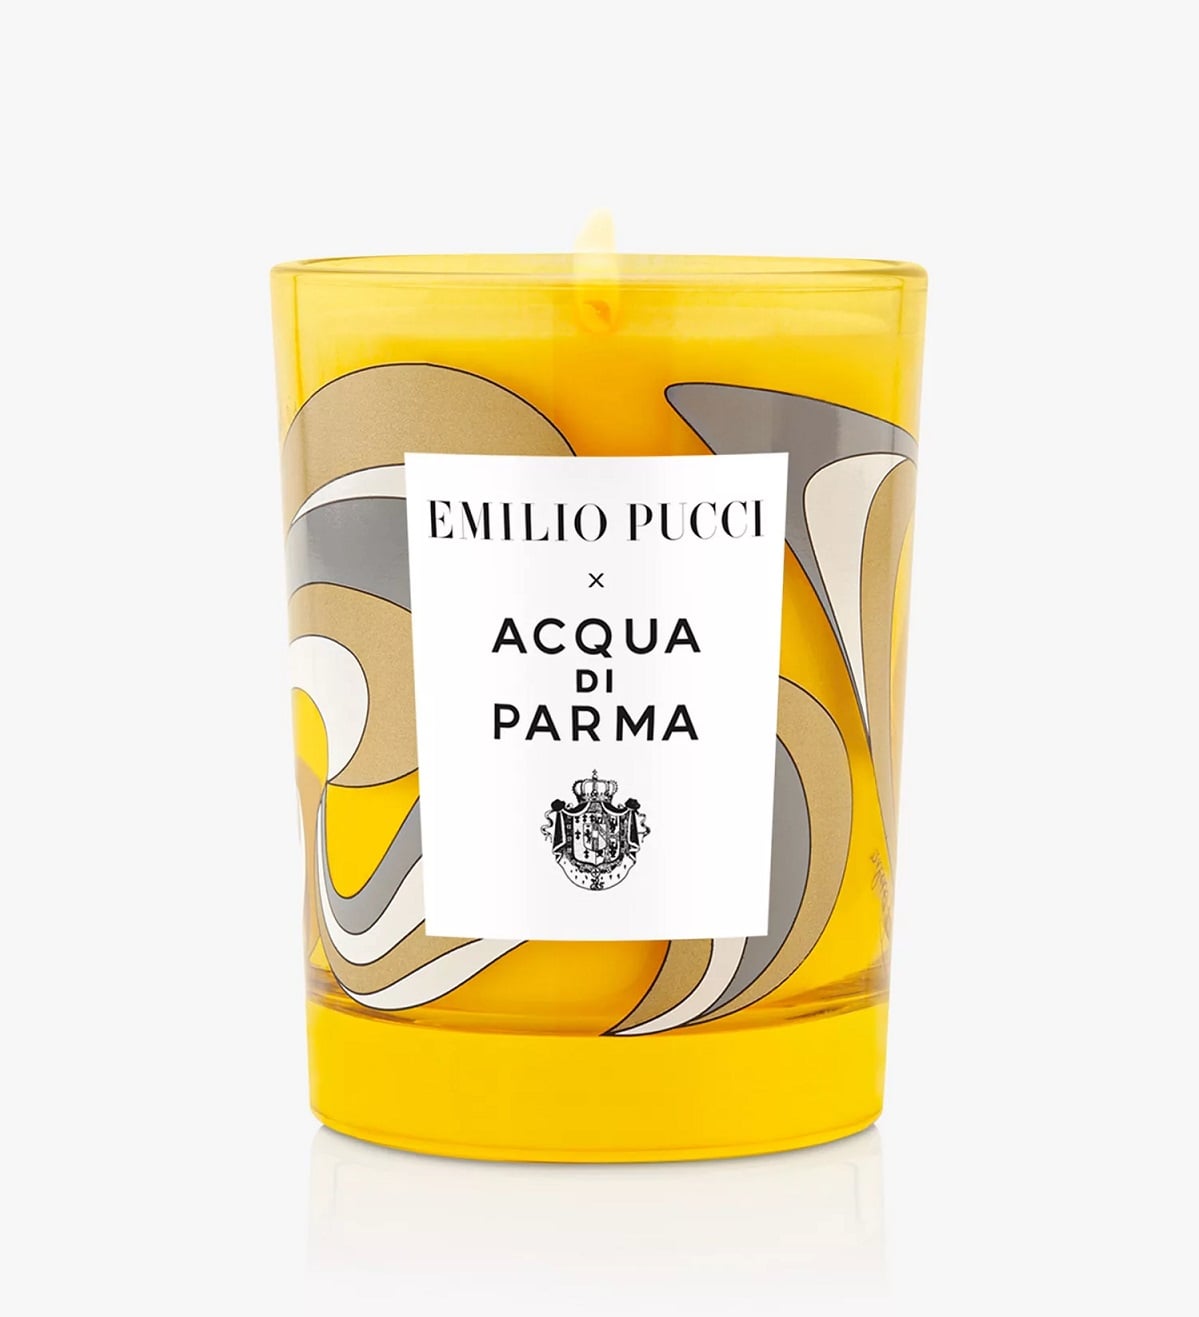 Emilio Pucci x Acqua di Parma